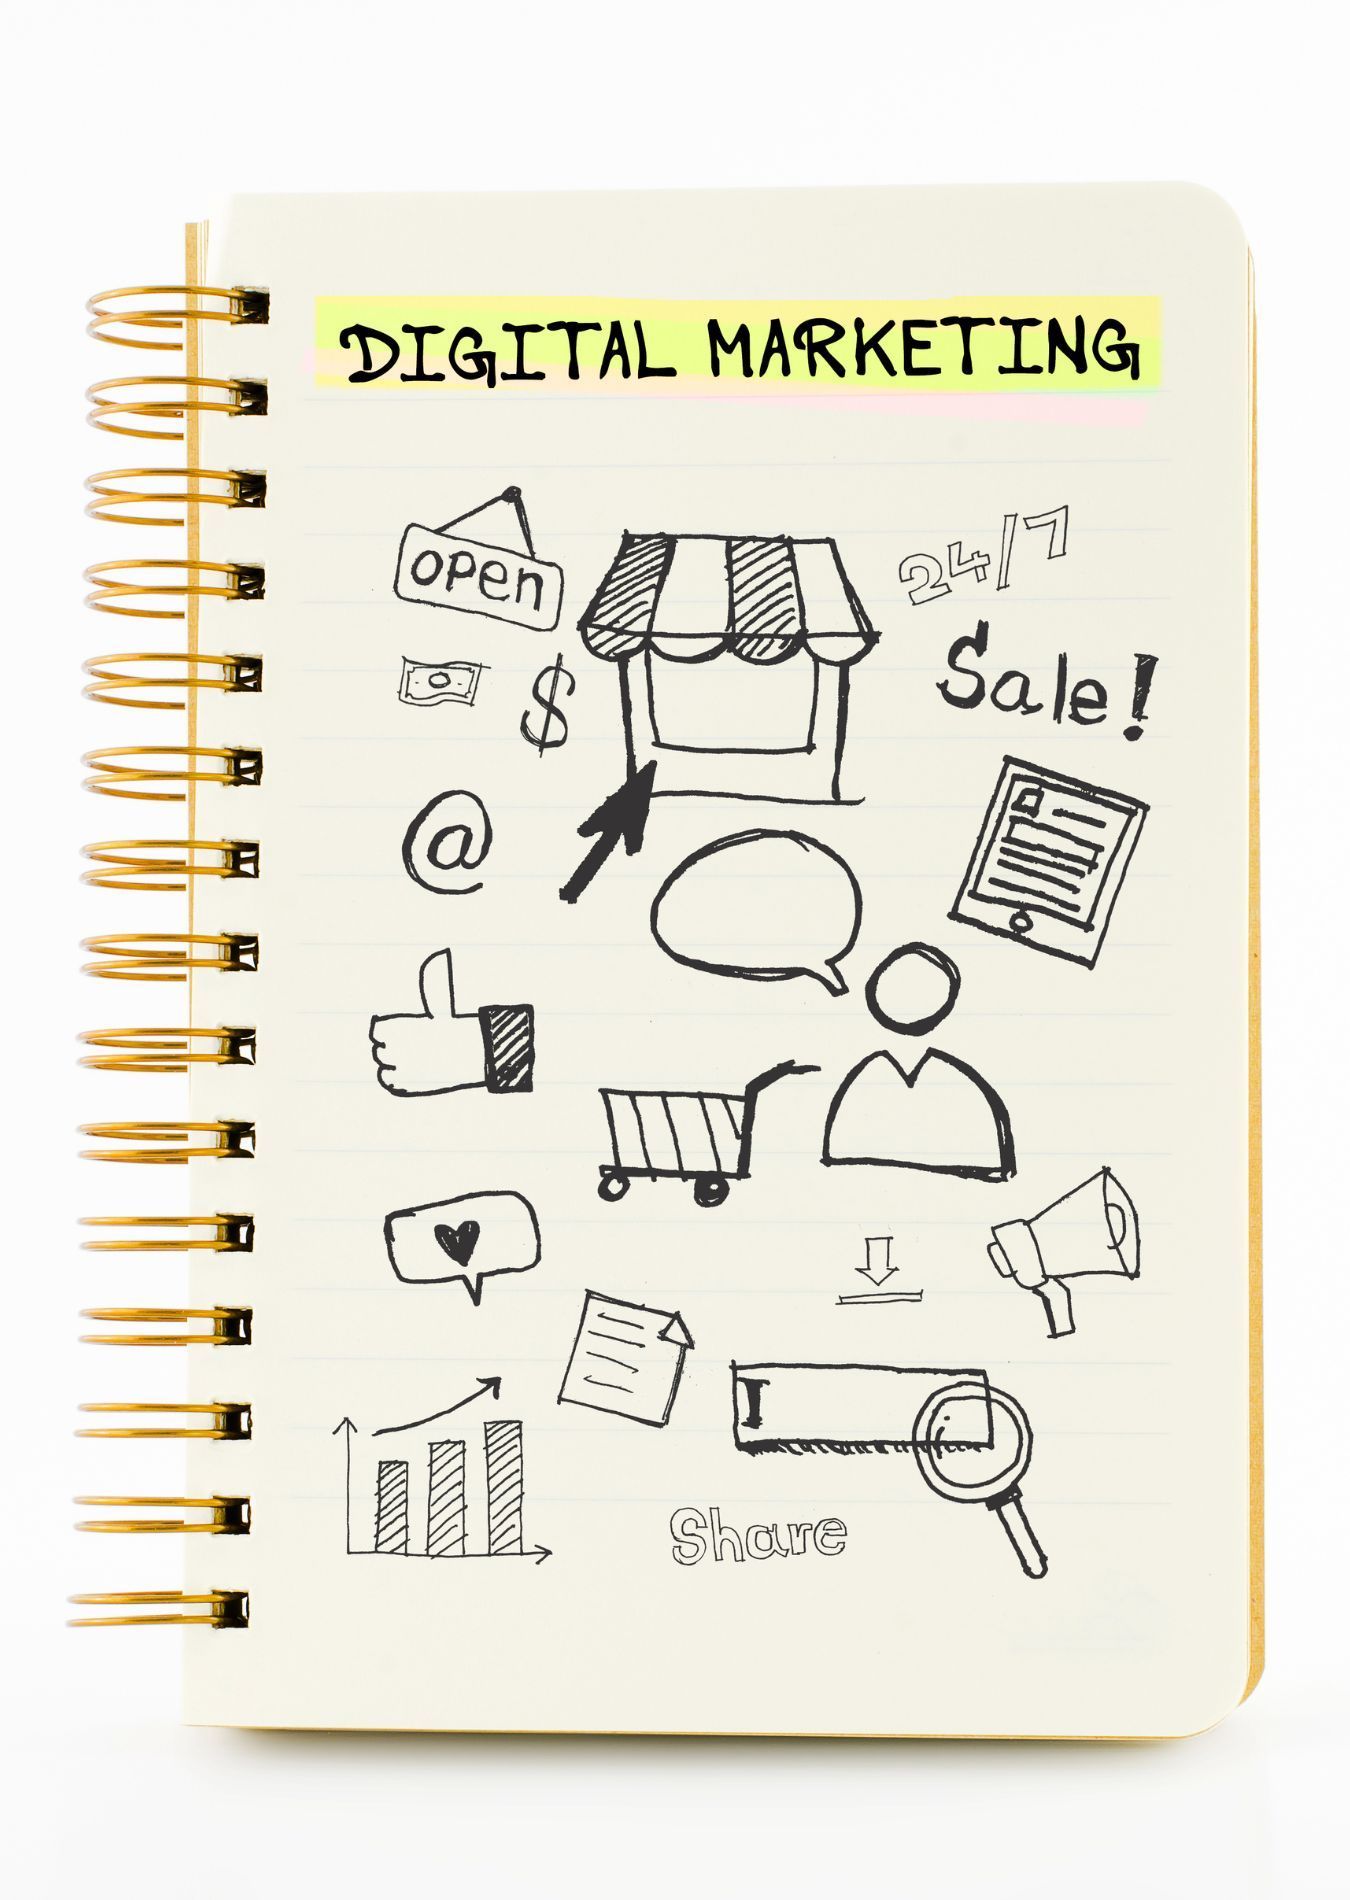 Orlando FL digital marketing company plan